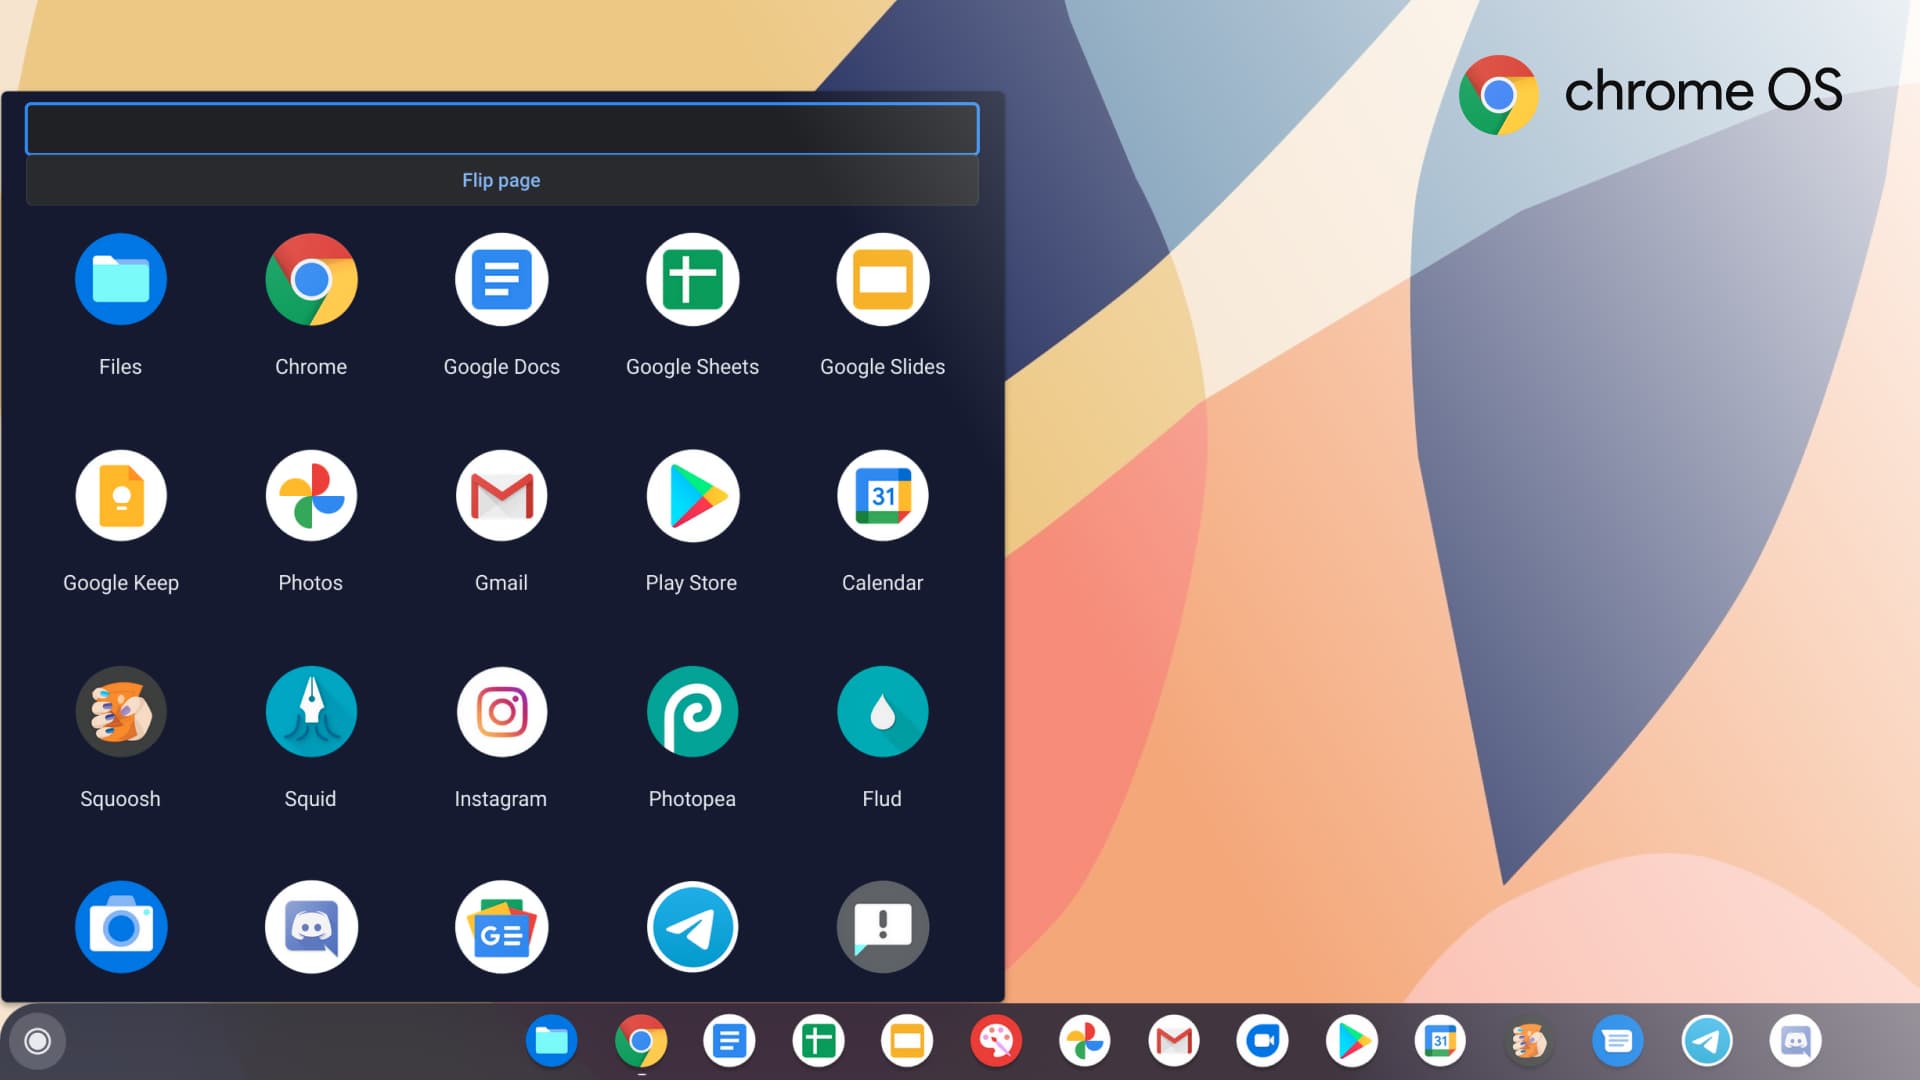 unocero Google Chrome OS ya está disponible para PC y Mac